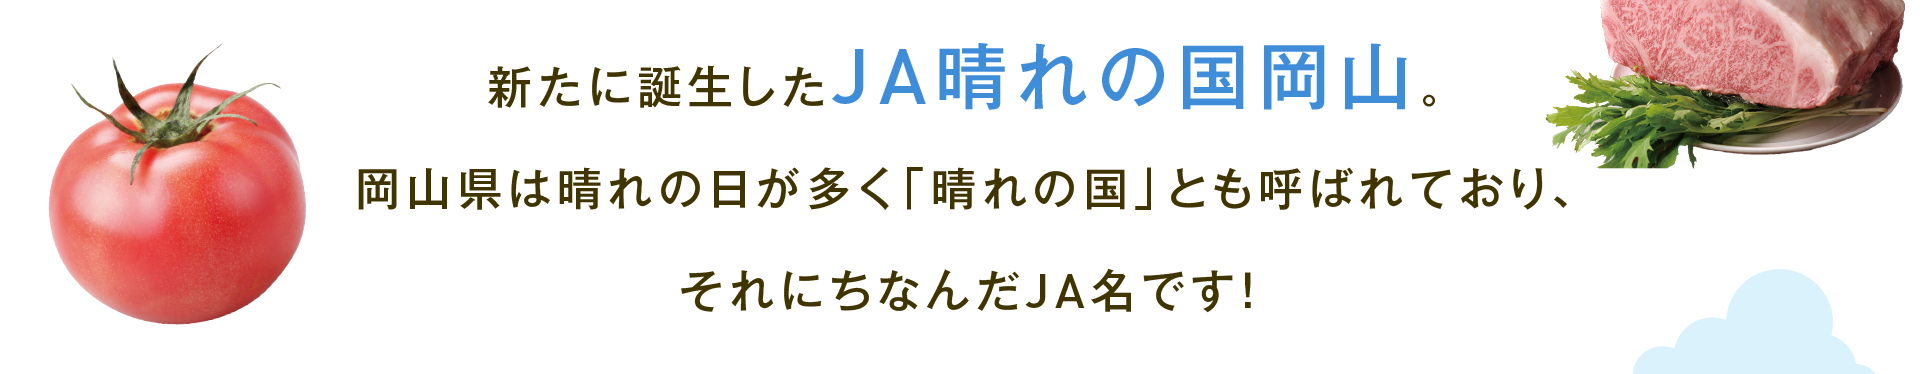 新たに誕生したJA晴れの国岡山。岡山県は晴れの日が多く「晴れの国」とも呼ばれており、それにちなんだJA名です！